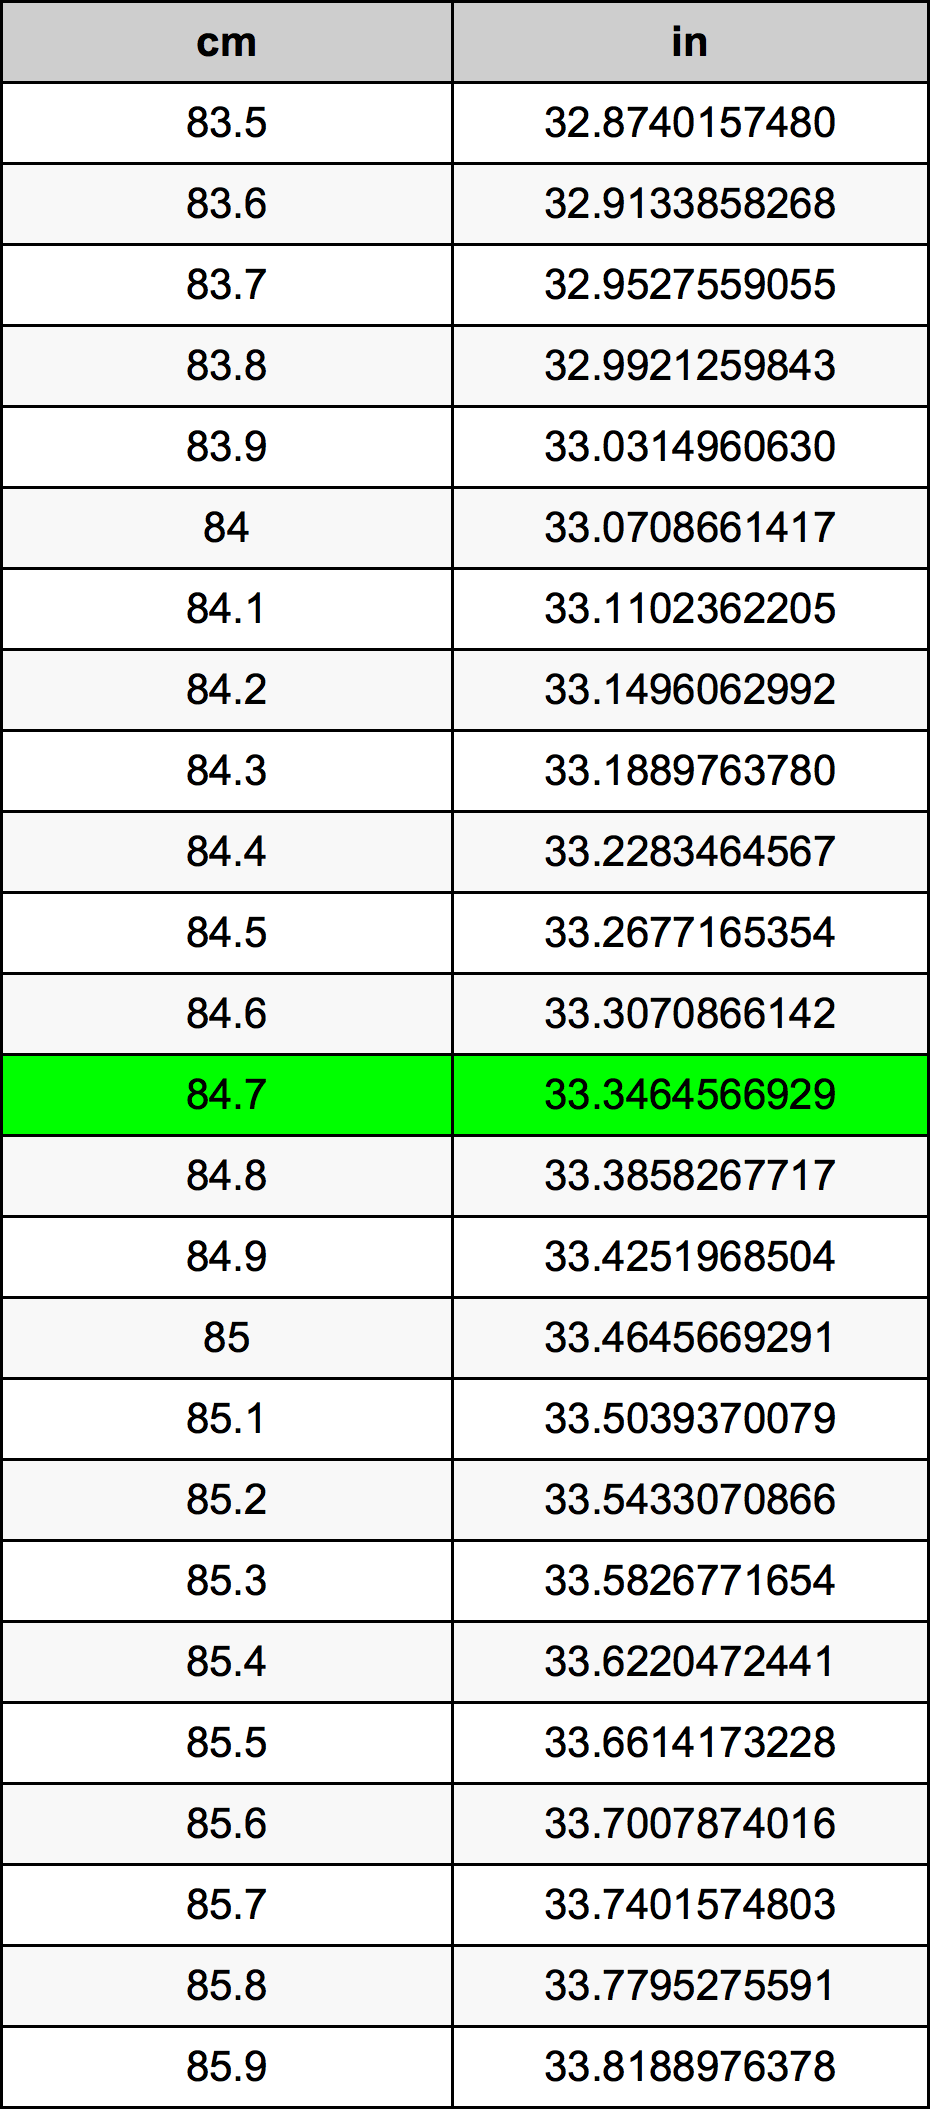 84.7 Centiméter átszámítási táblázat